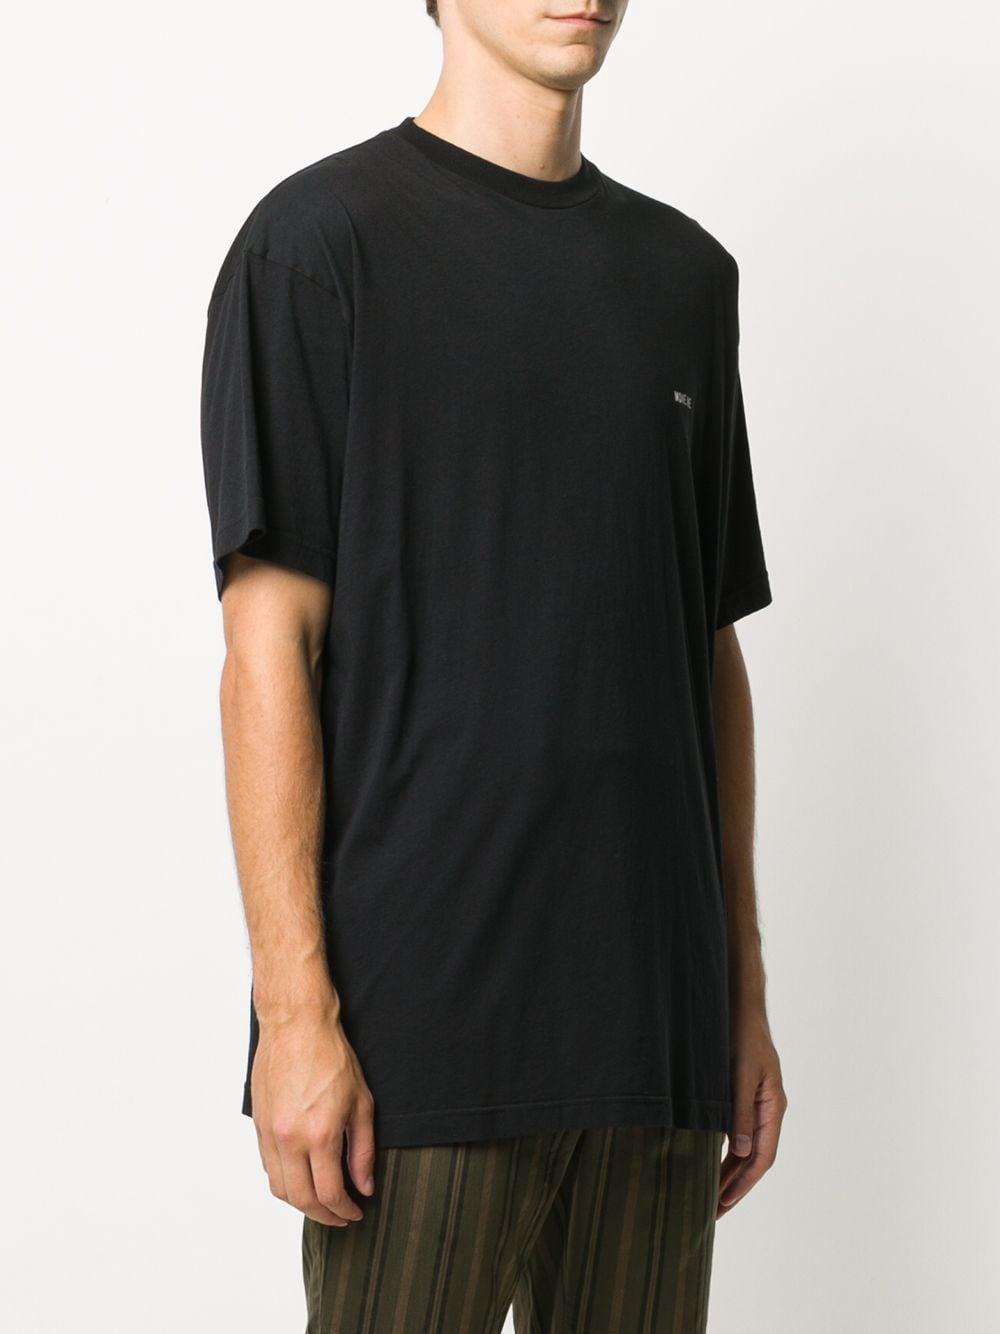 Haider Ackermann Crew-neck Cotton T-shirt in Black for Men - Lyst